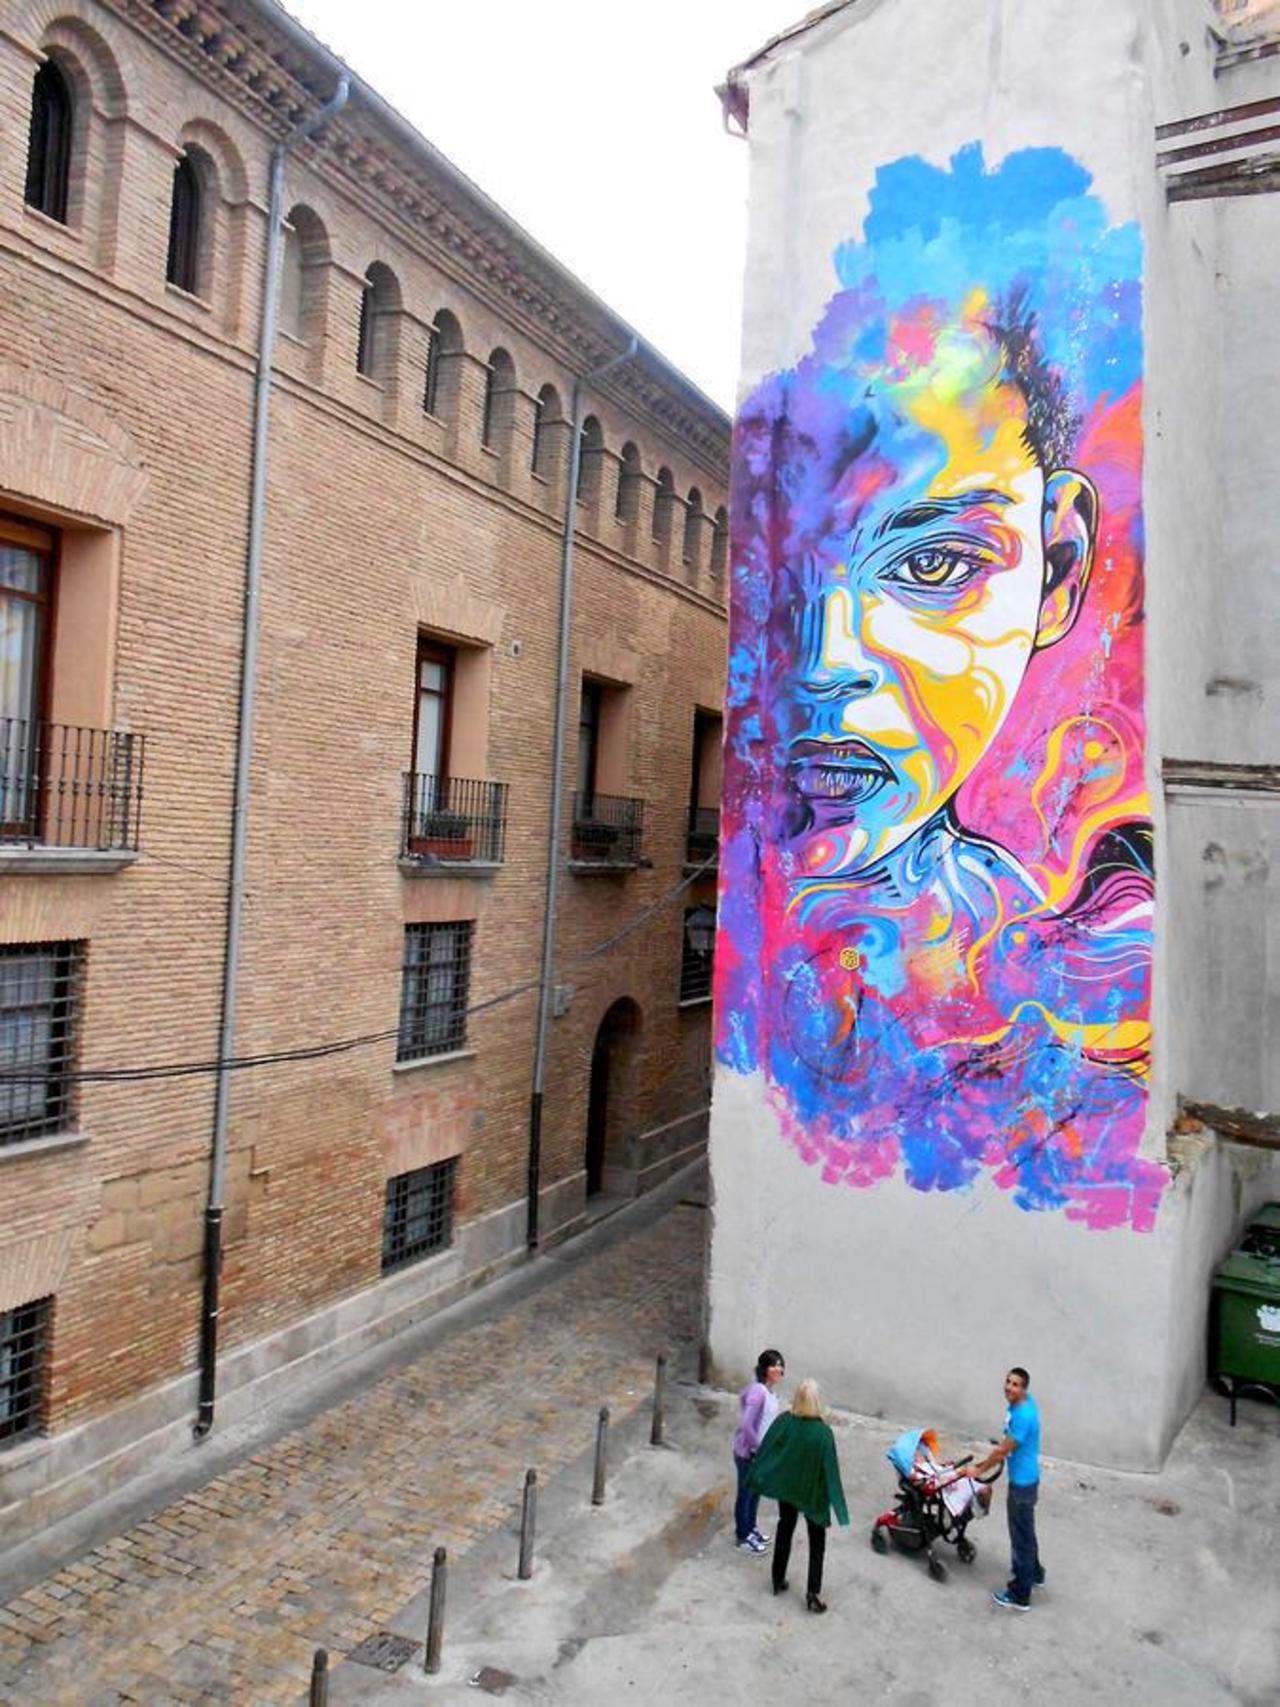 "@Pitchuskita: C215
Barcelona
#streetart #art #graffiti #mural http://t.co/tQFSwY99x5"